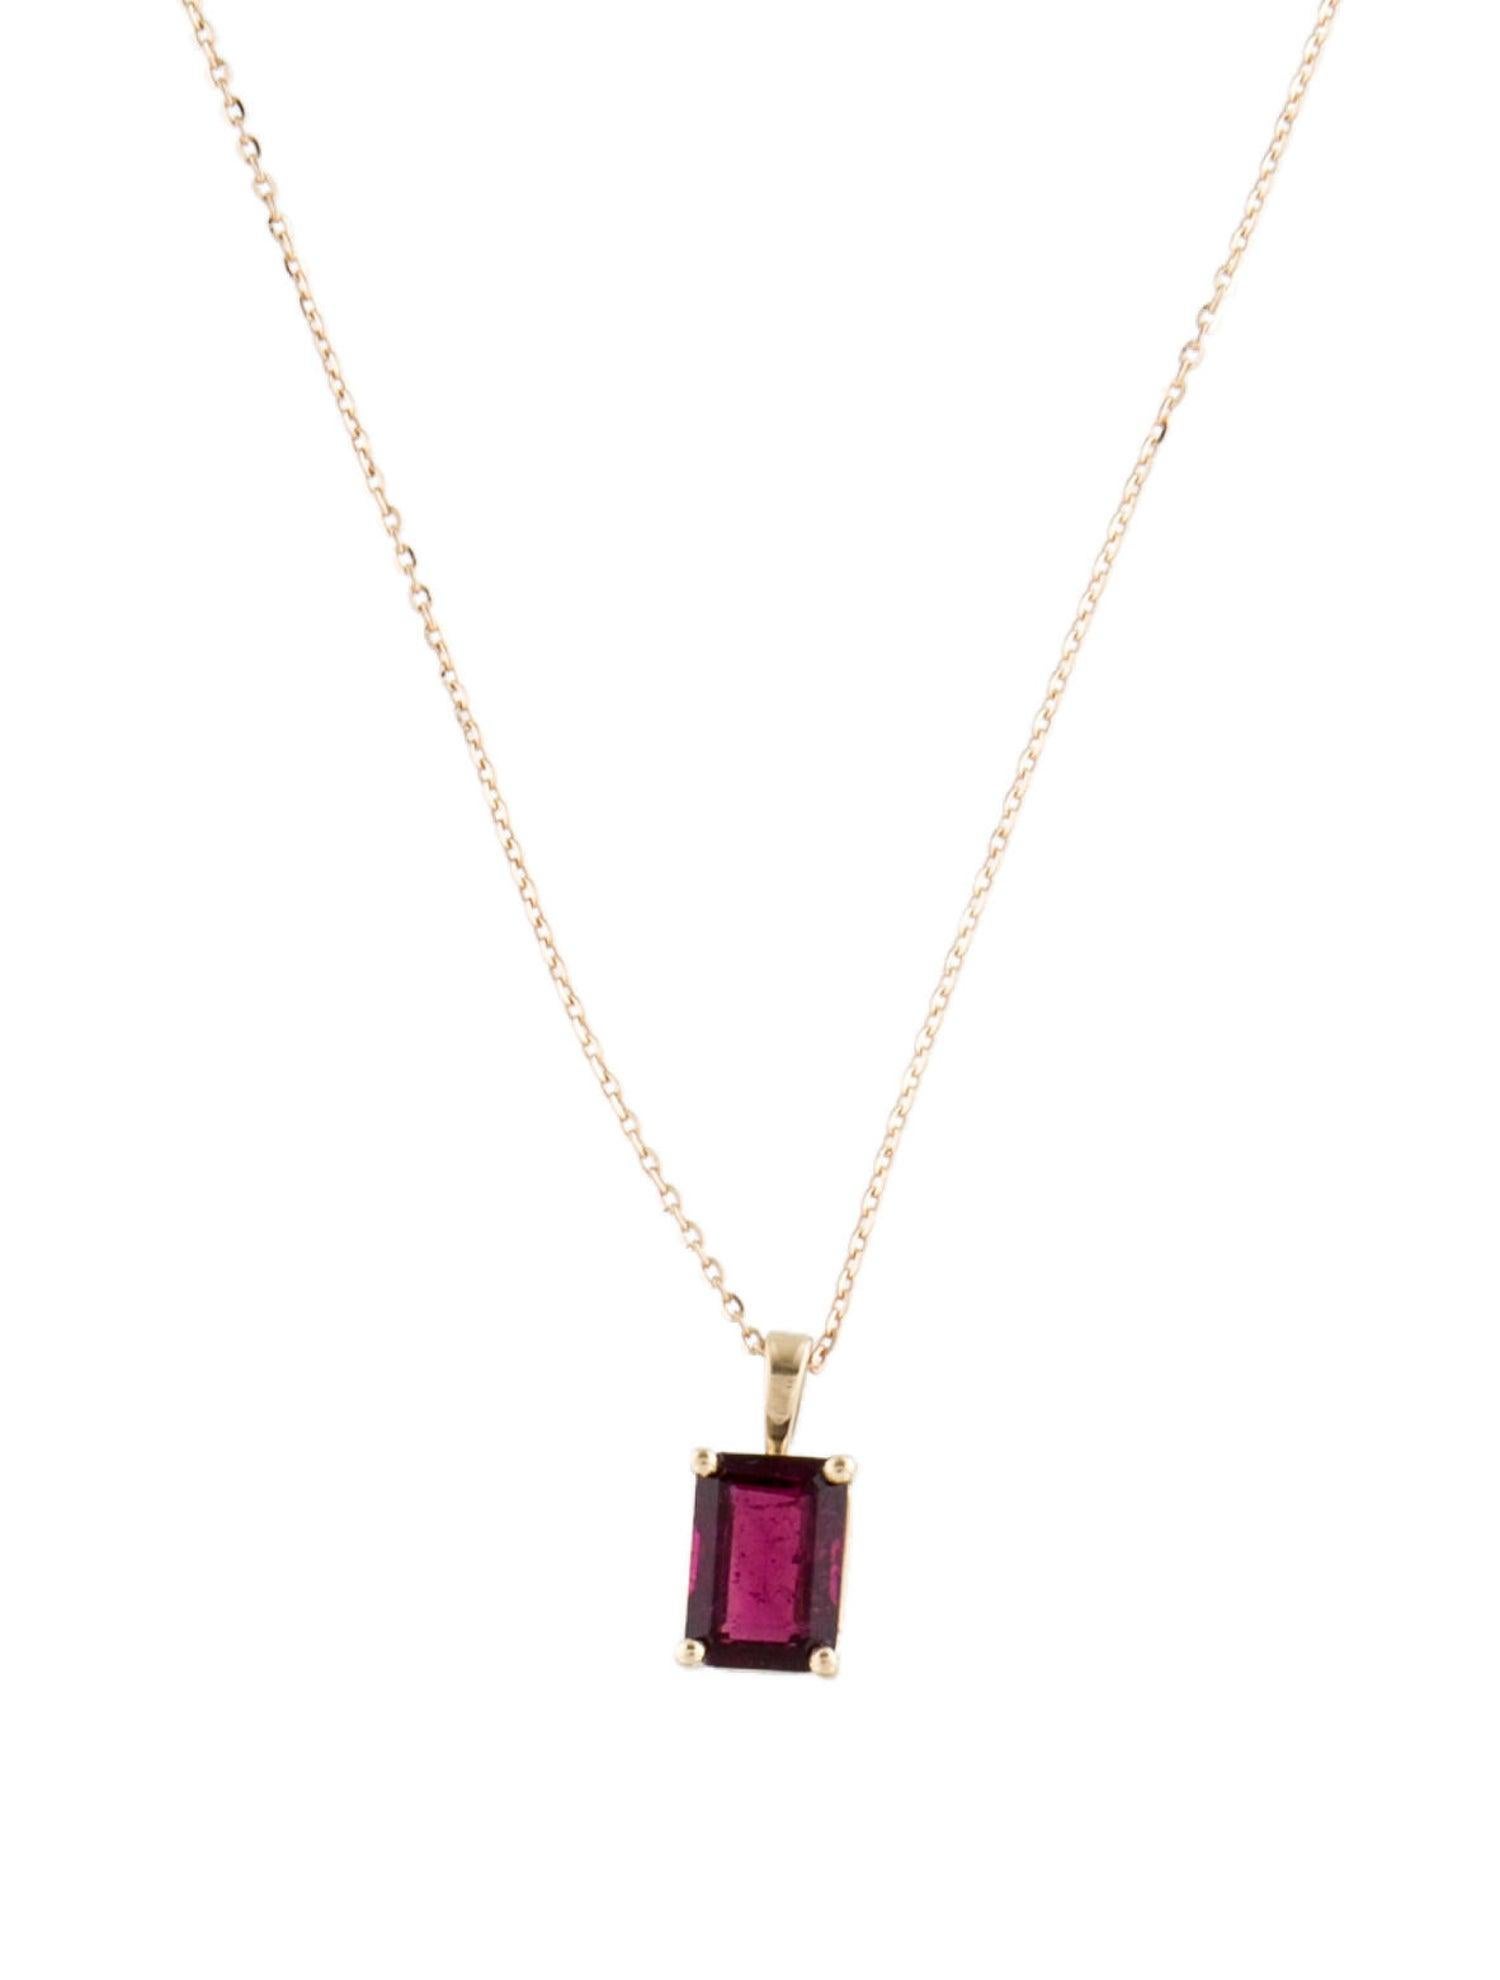 Nous vous présentons notre exquis collier à pendentif en or jaune 14 carats à la tourmaline rose, une pièce qui incarne la grâce et la sophistication. Ce collier est orné d'une superbe tourmaline rectangulaire de 1,49 carat, taillée en biseau, d'une